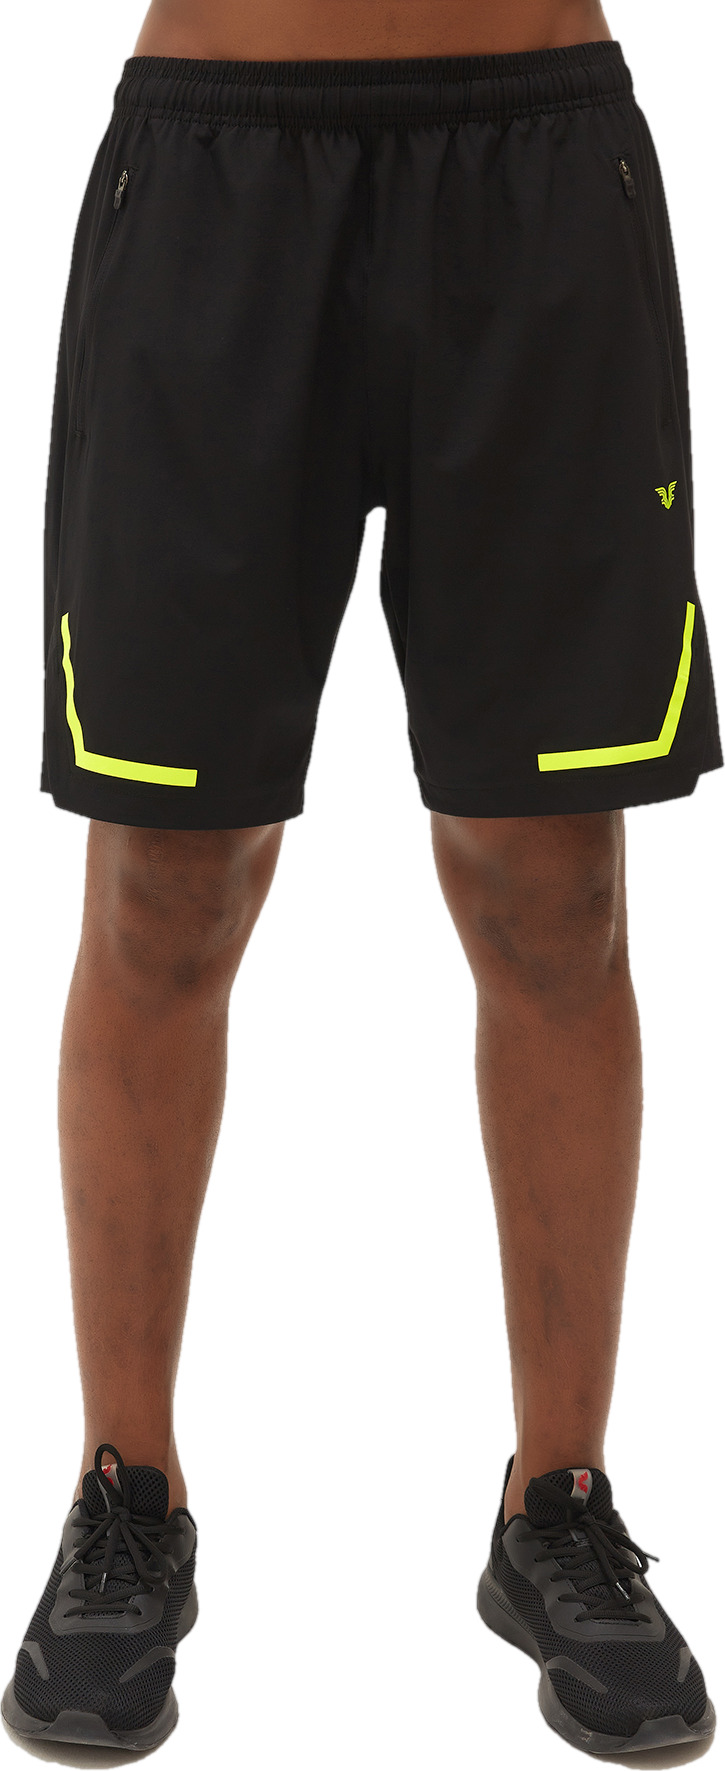 Спортивные шорты мужские Bilcee Men Woven Shorts черные M